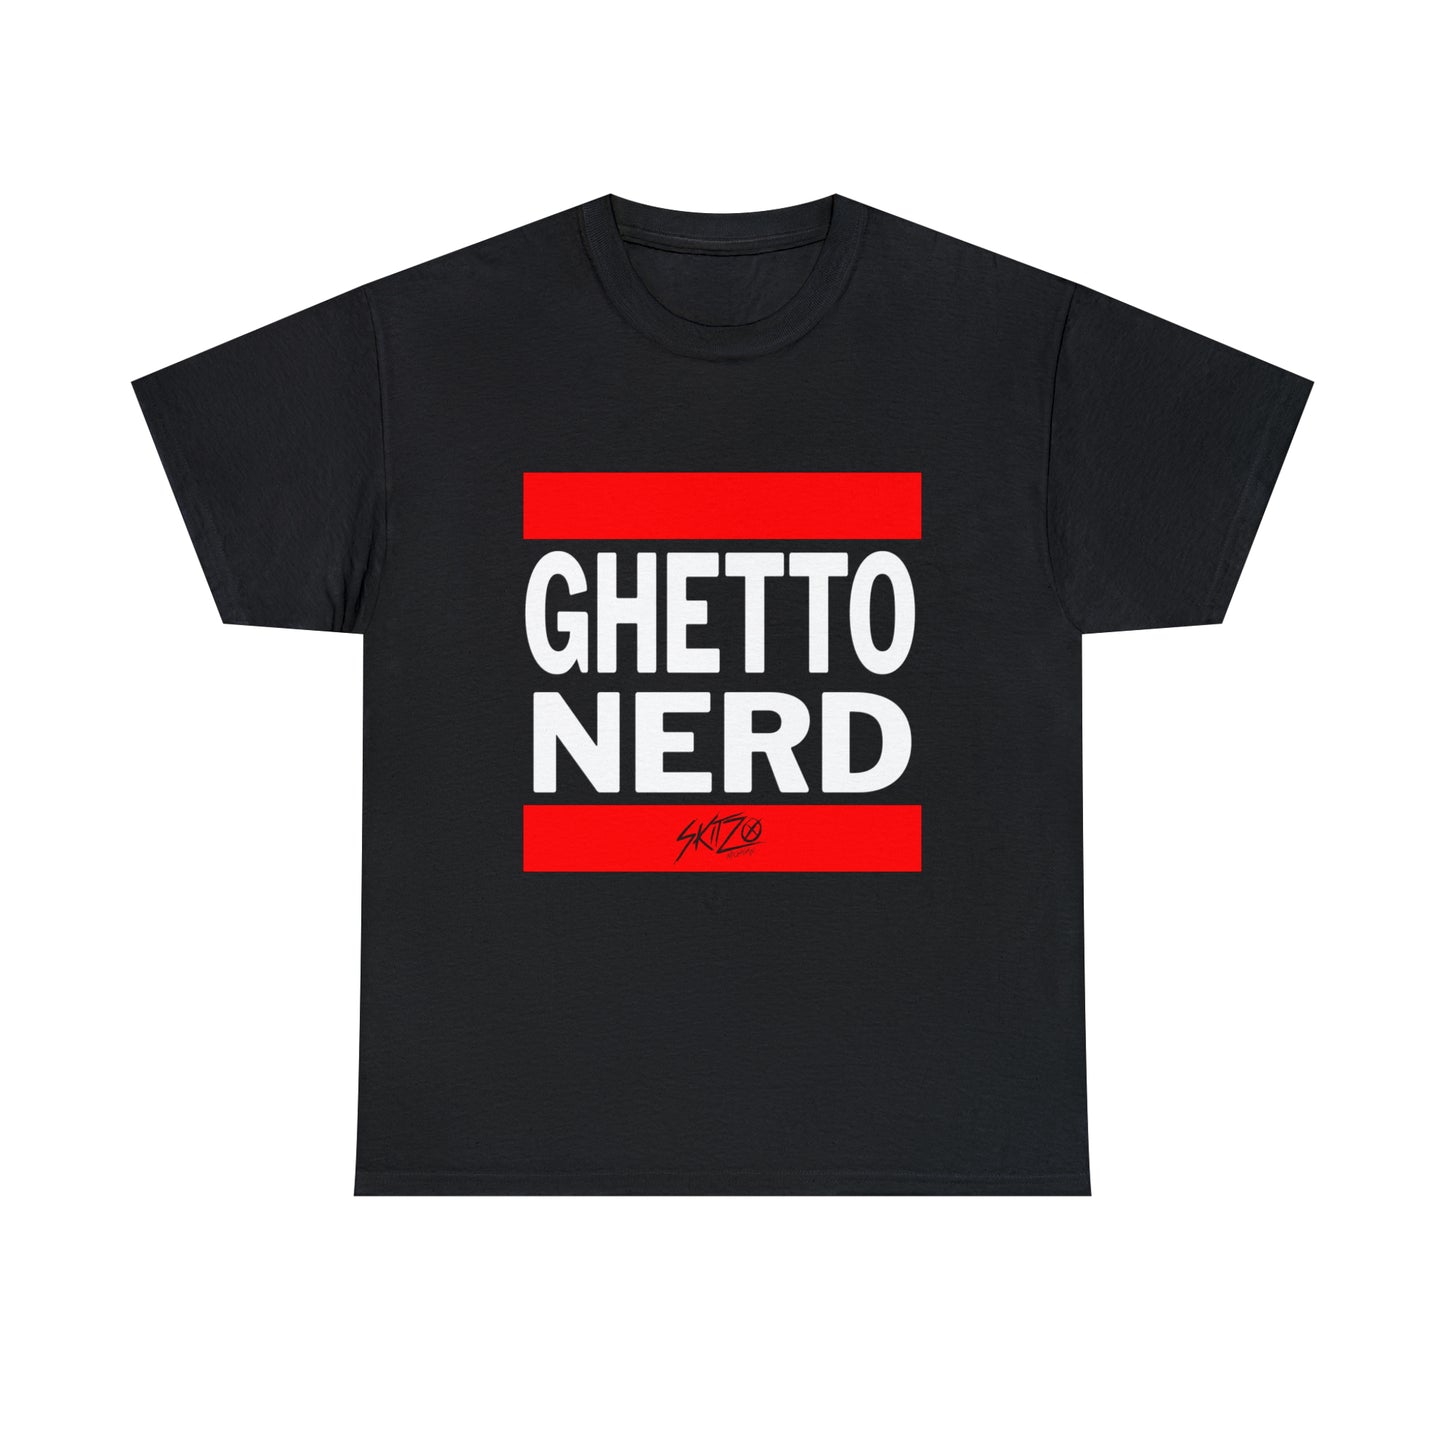 Skitzo "Ghetto Nerd" T-Shirt